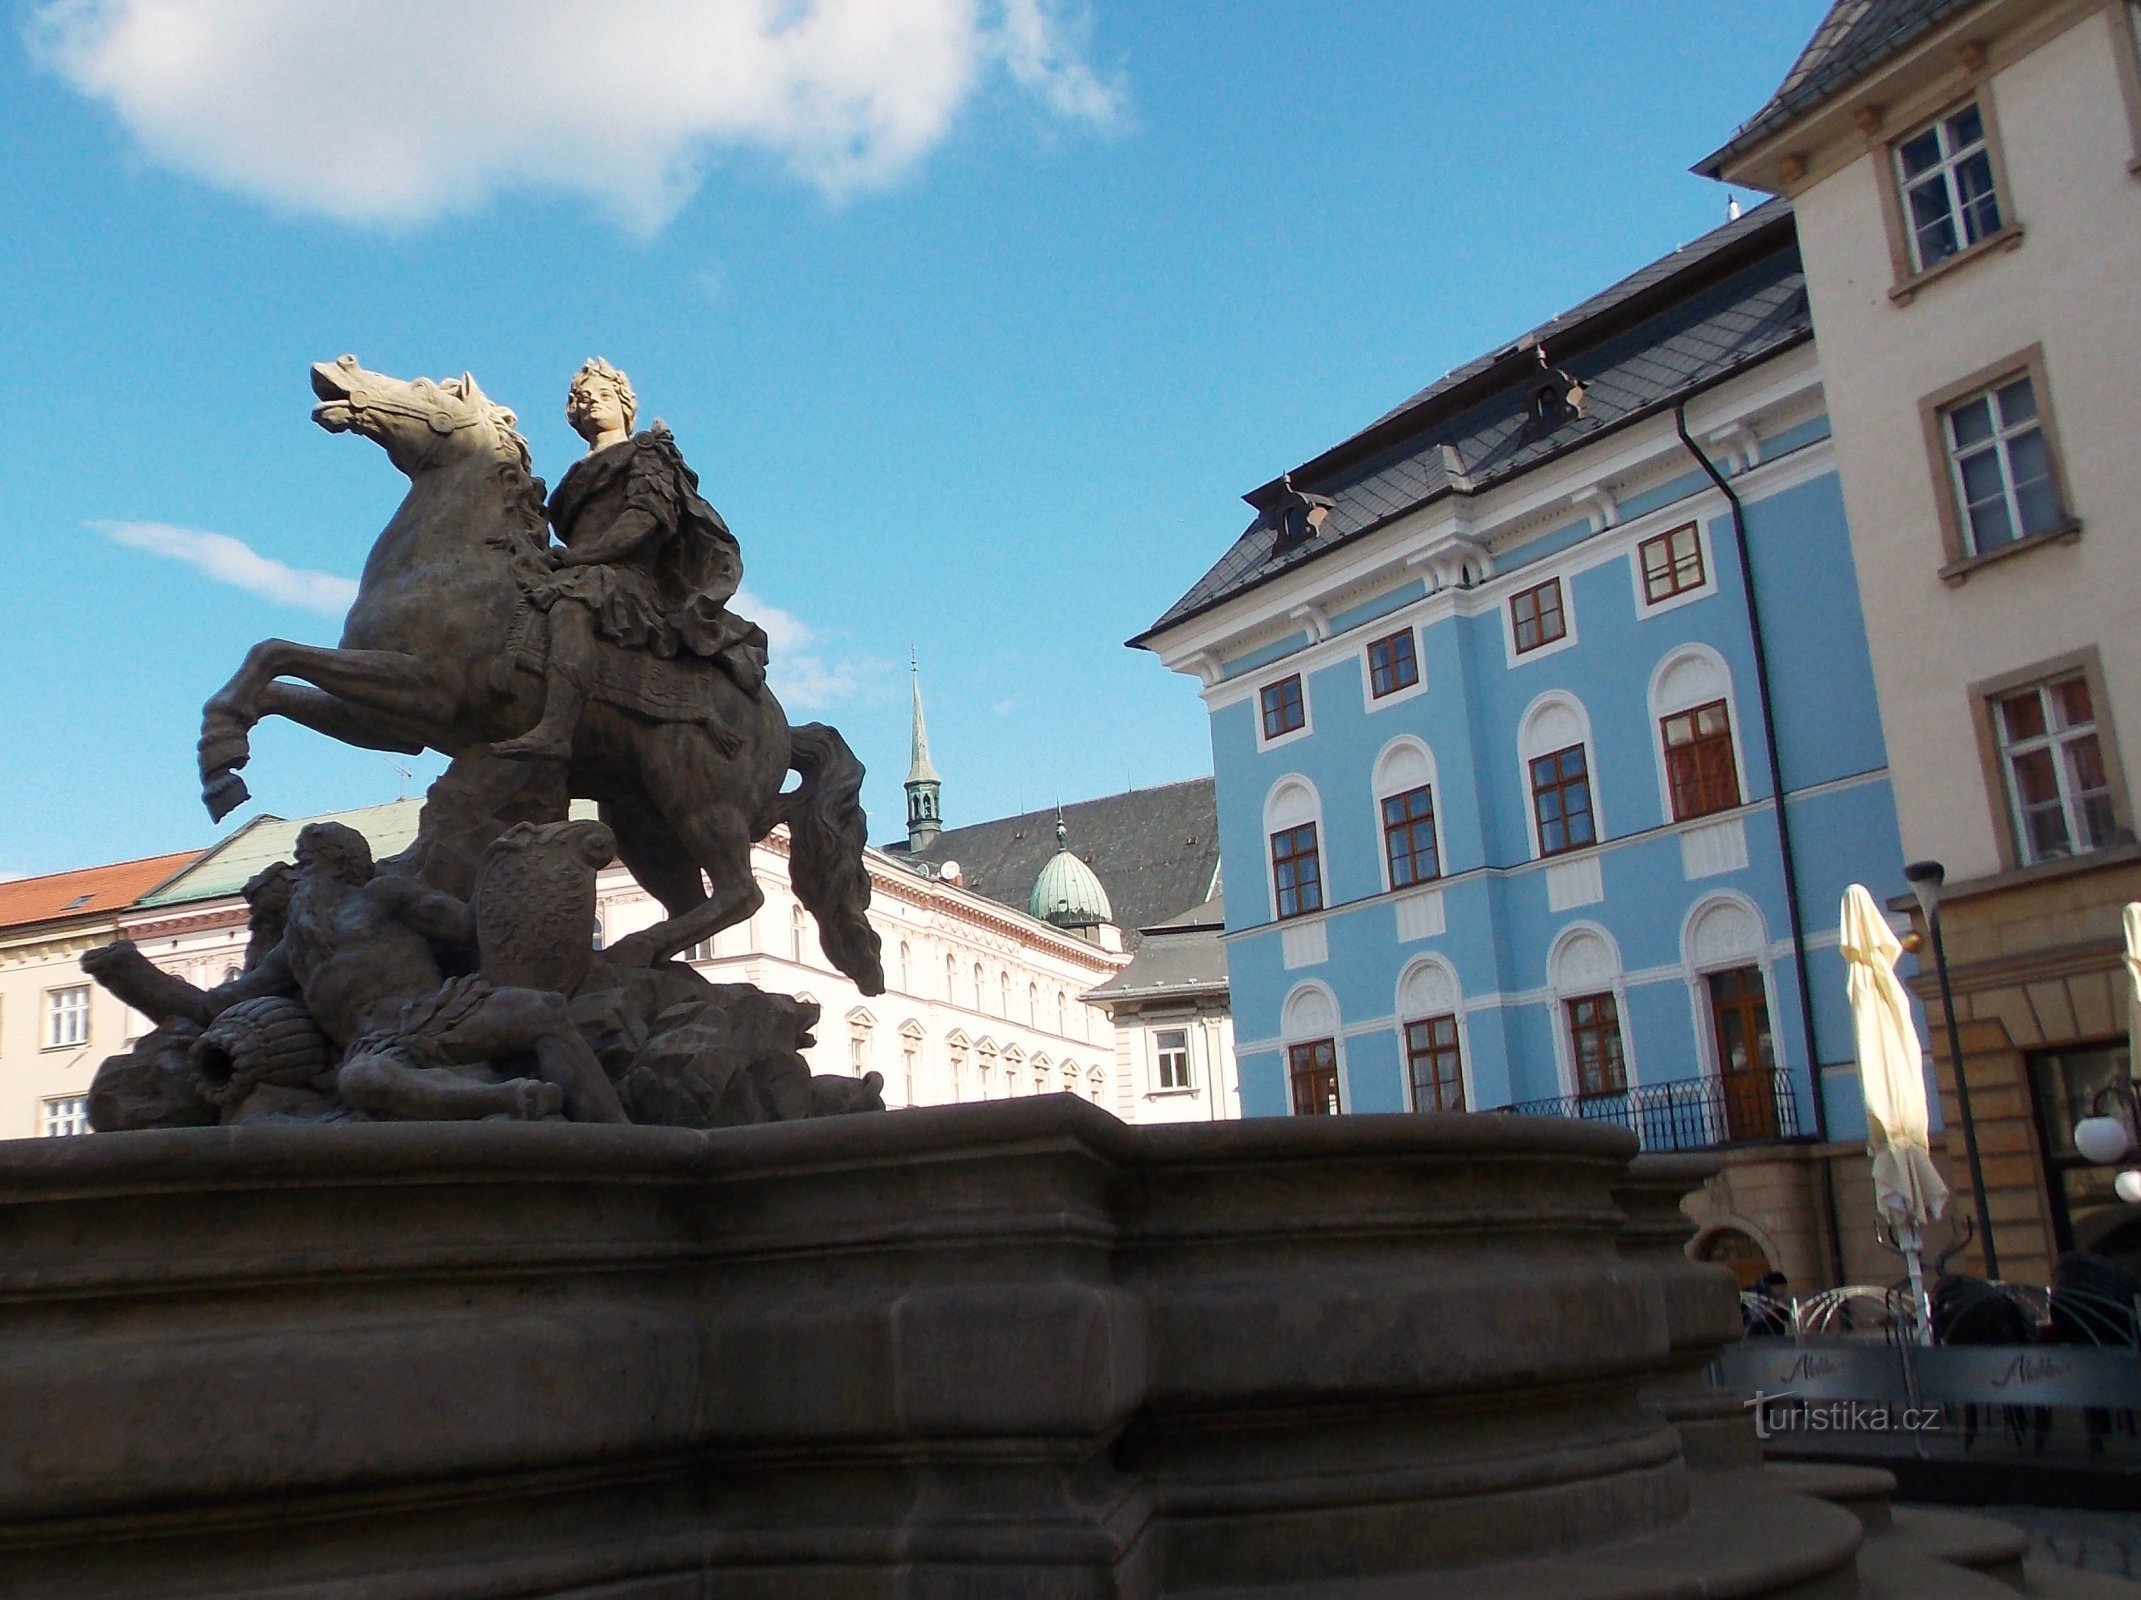 Zanimljivo mjesto na Horní náměstí u Olomoucu